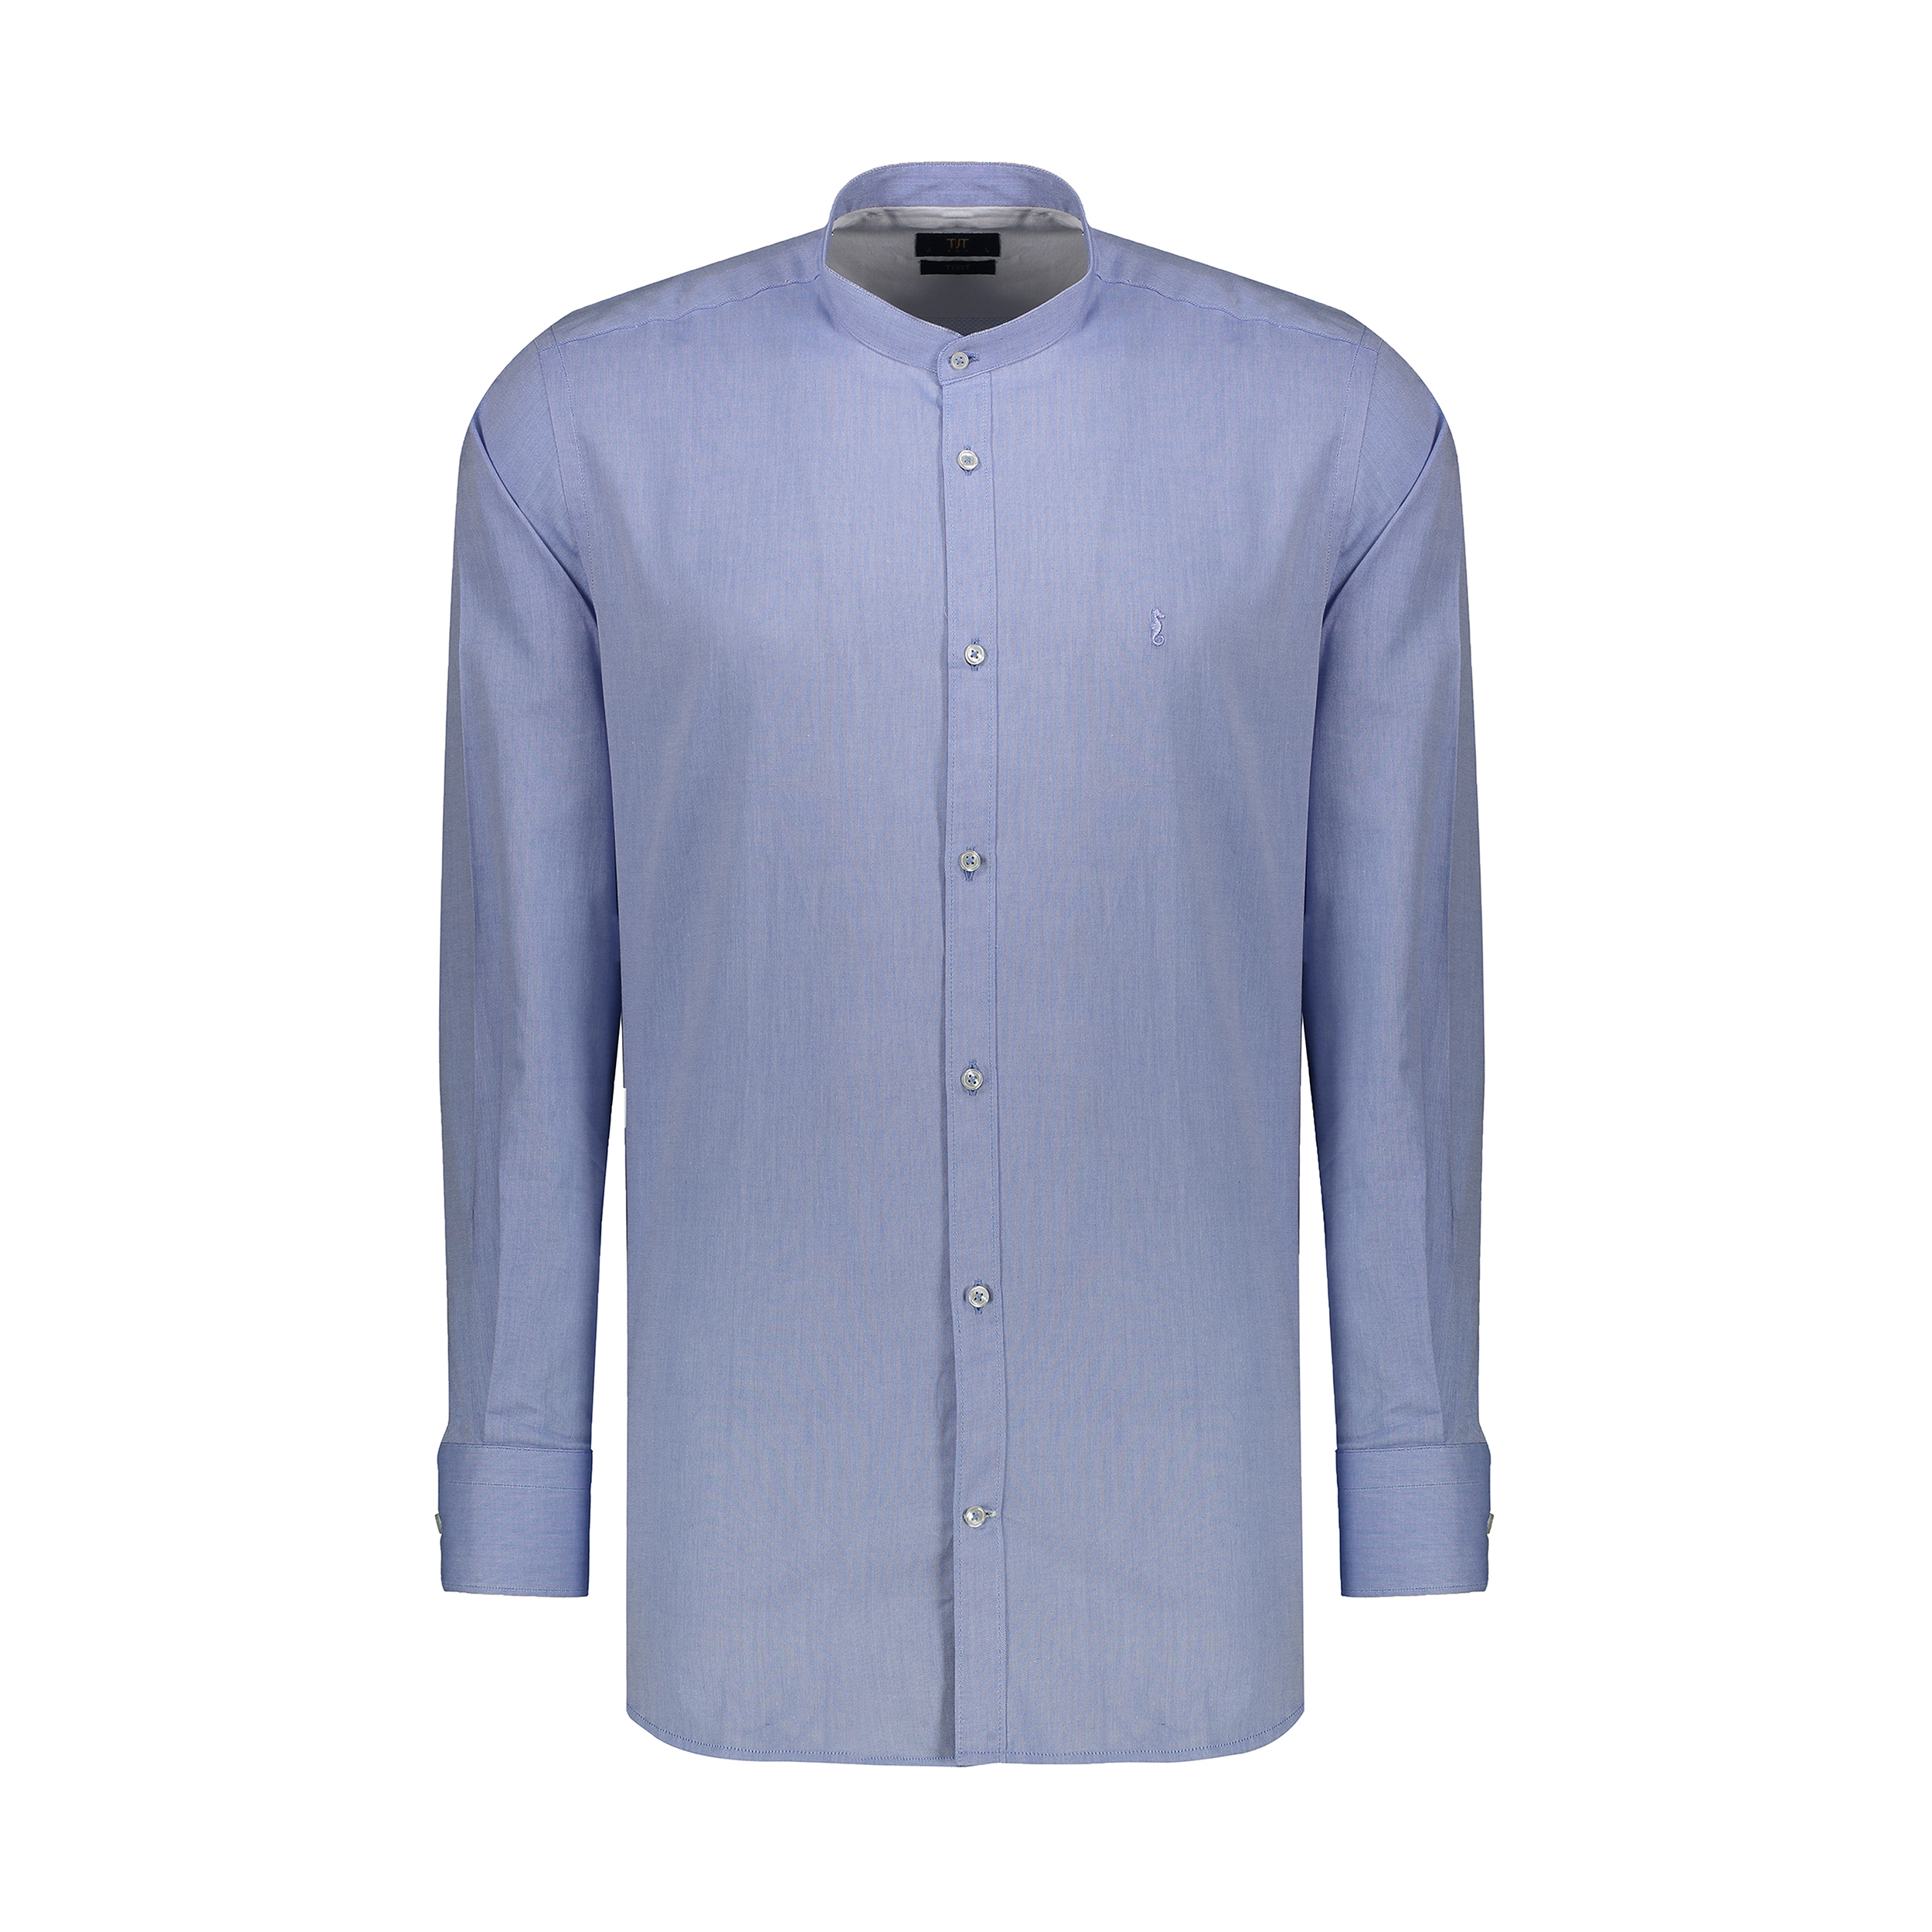 پیراهن آستین بلند مردانه ایکات مدل PST1151778 رنگ آبی